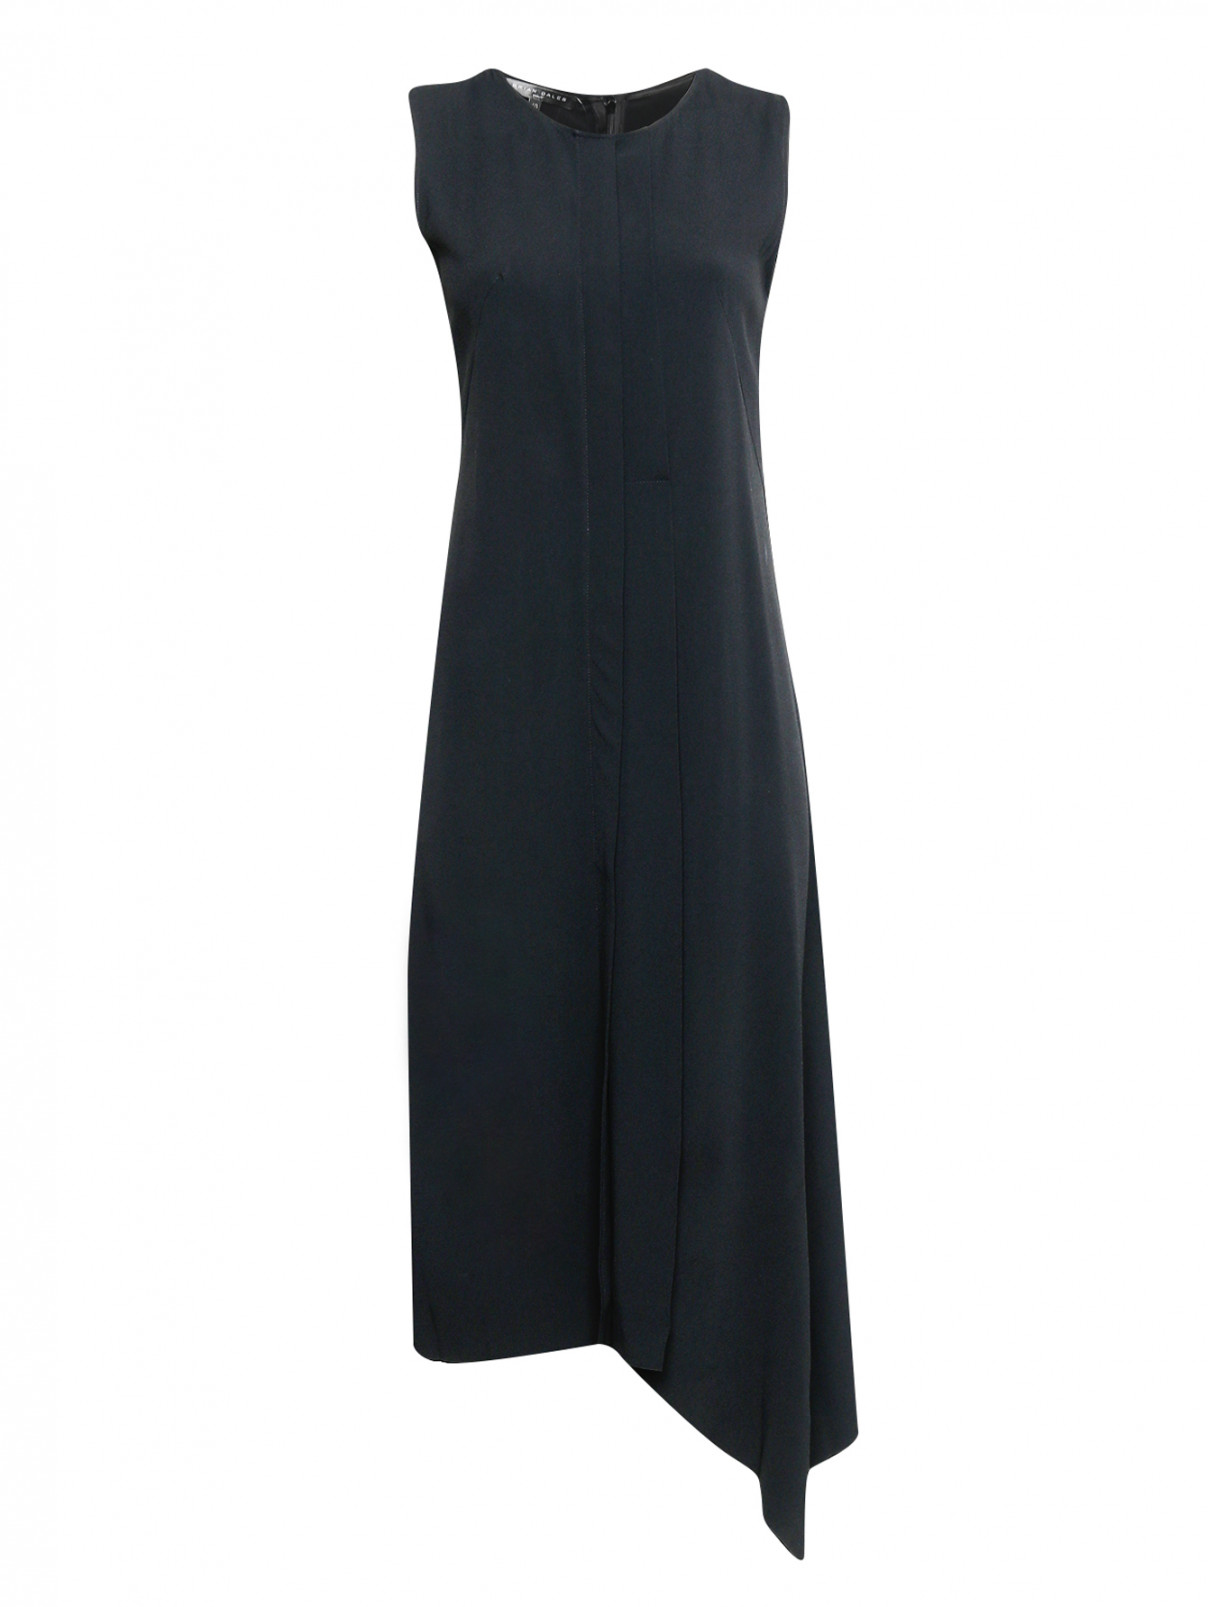 Платье асимметричного кроя без рукавов Brian Dales  –  Общий вид  – Цвет:  Черный